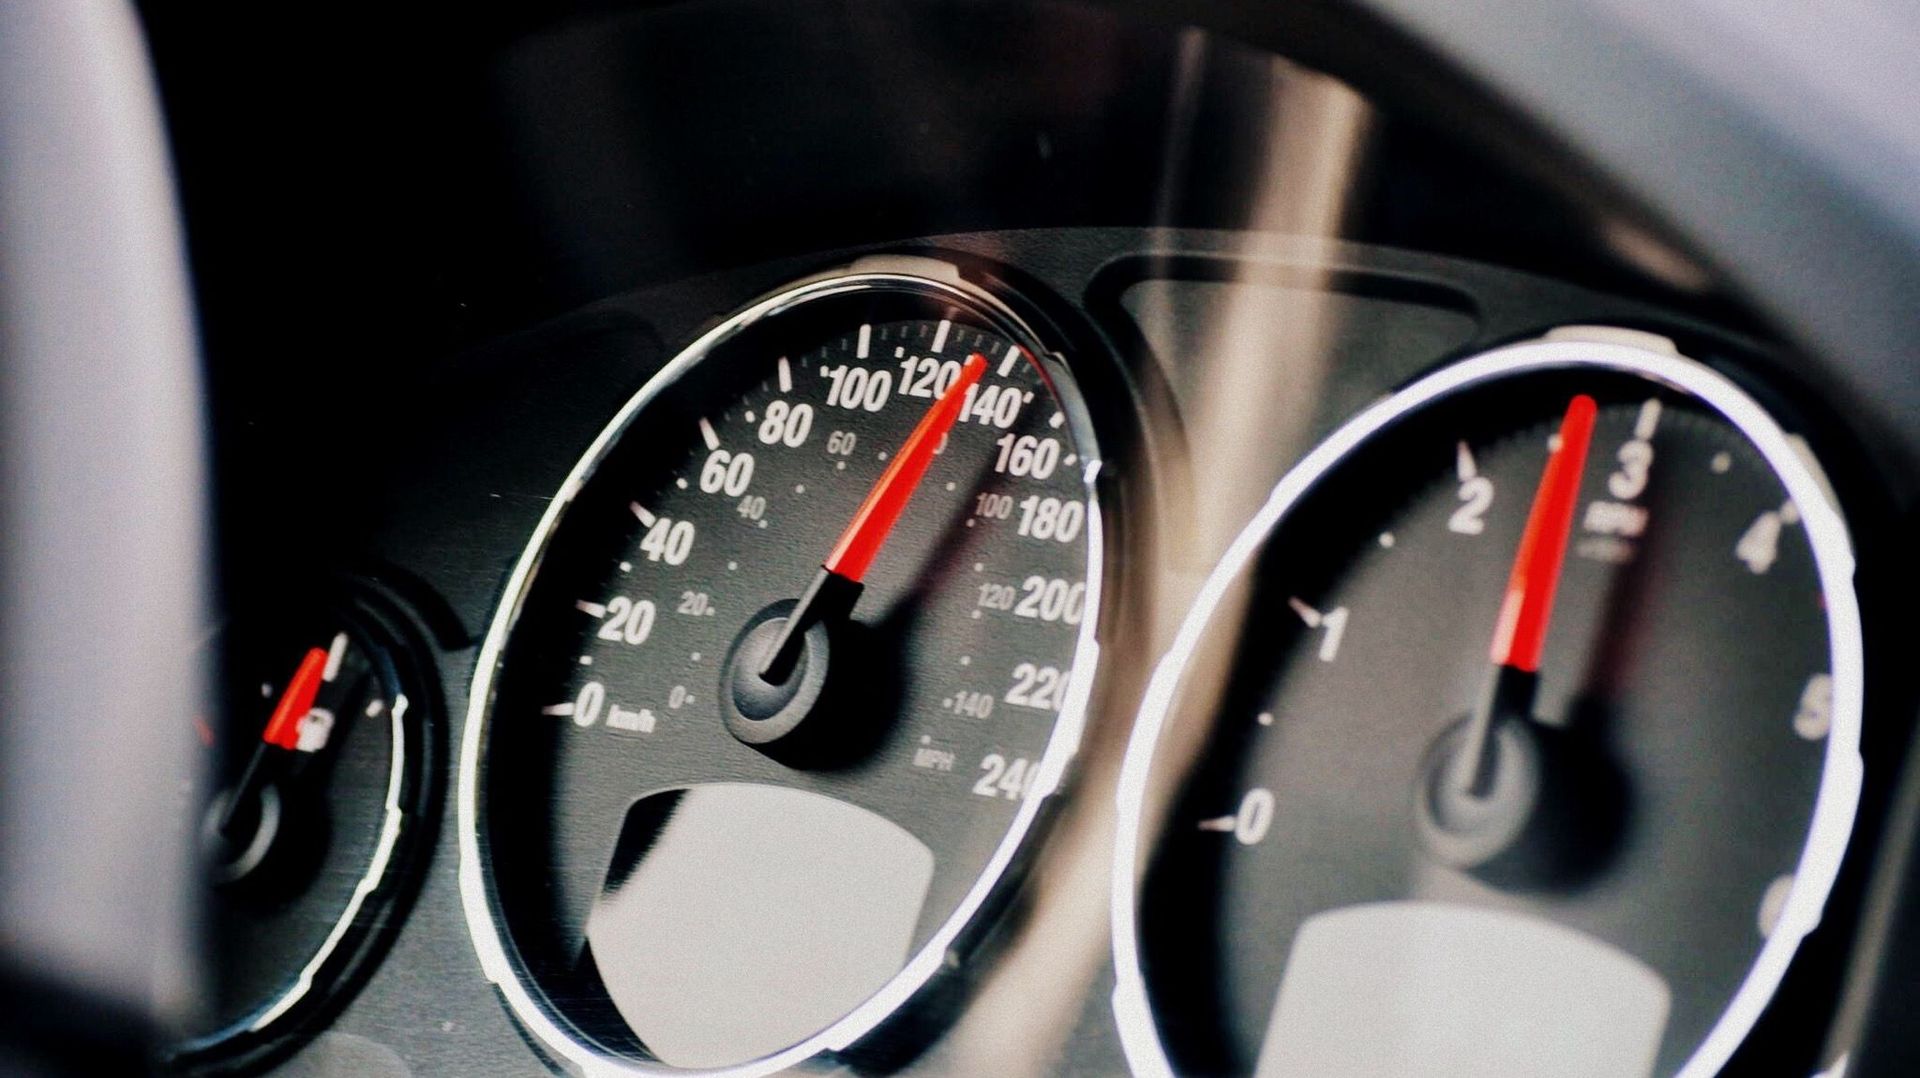 Indicateur de vitesse et jauge de carburant au tableau de bord d'une voiture.